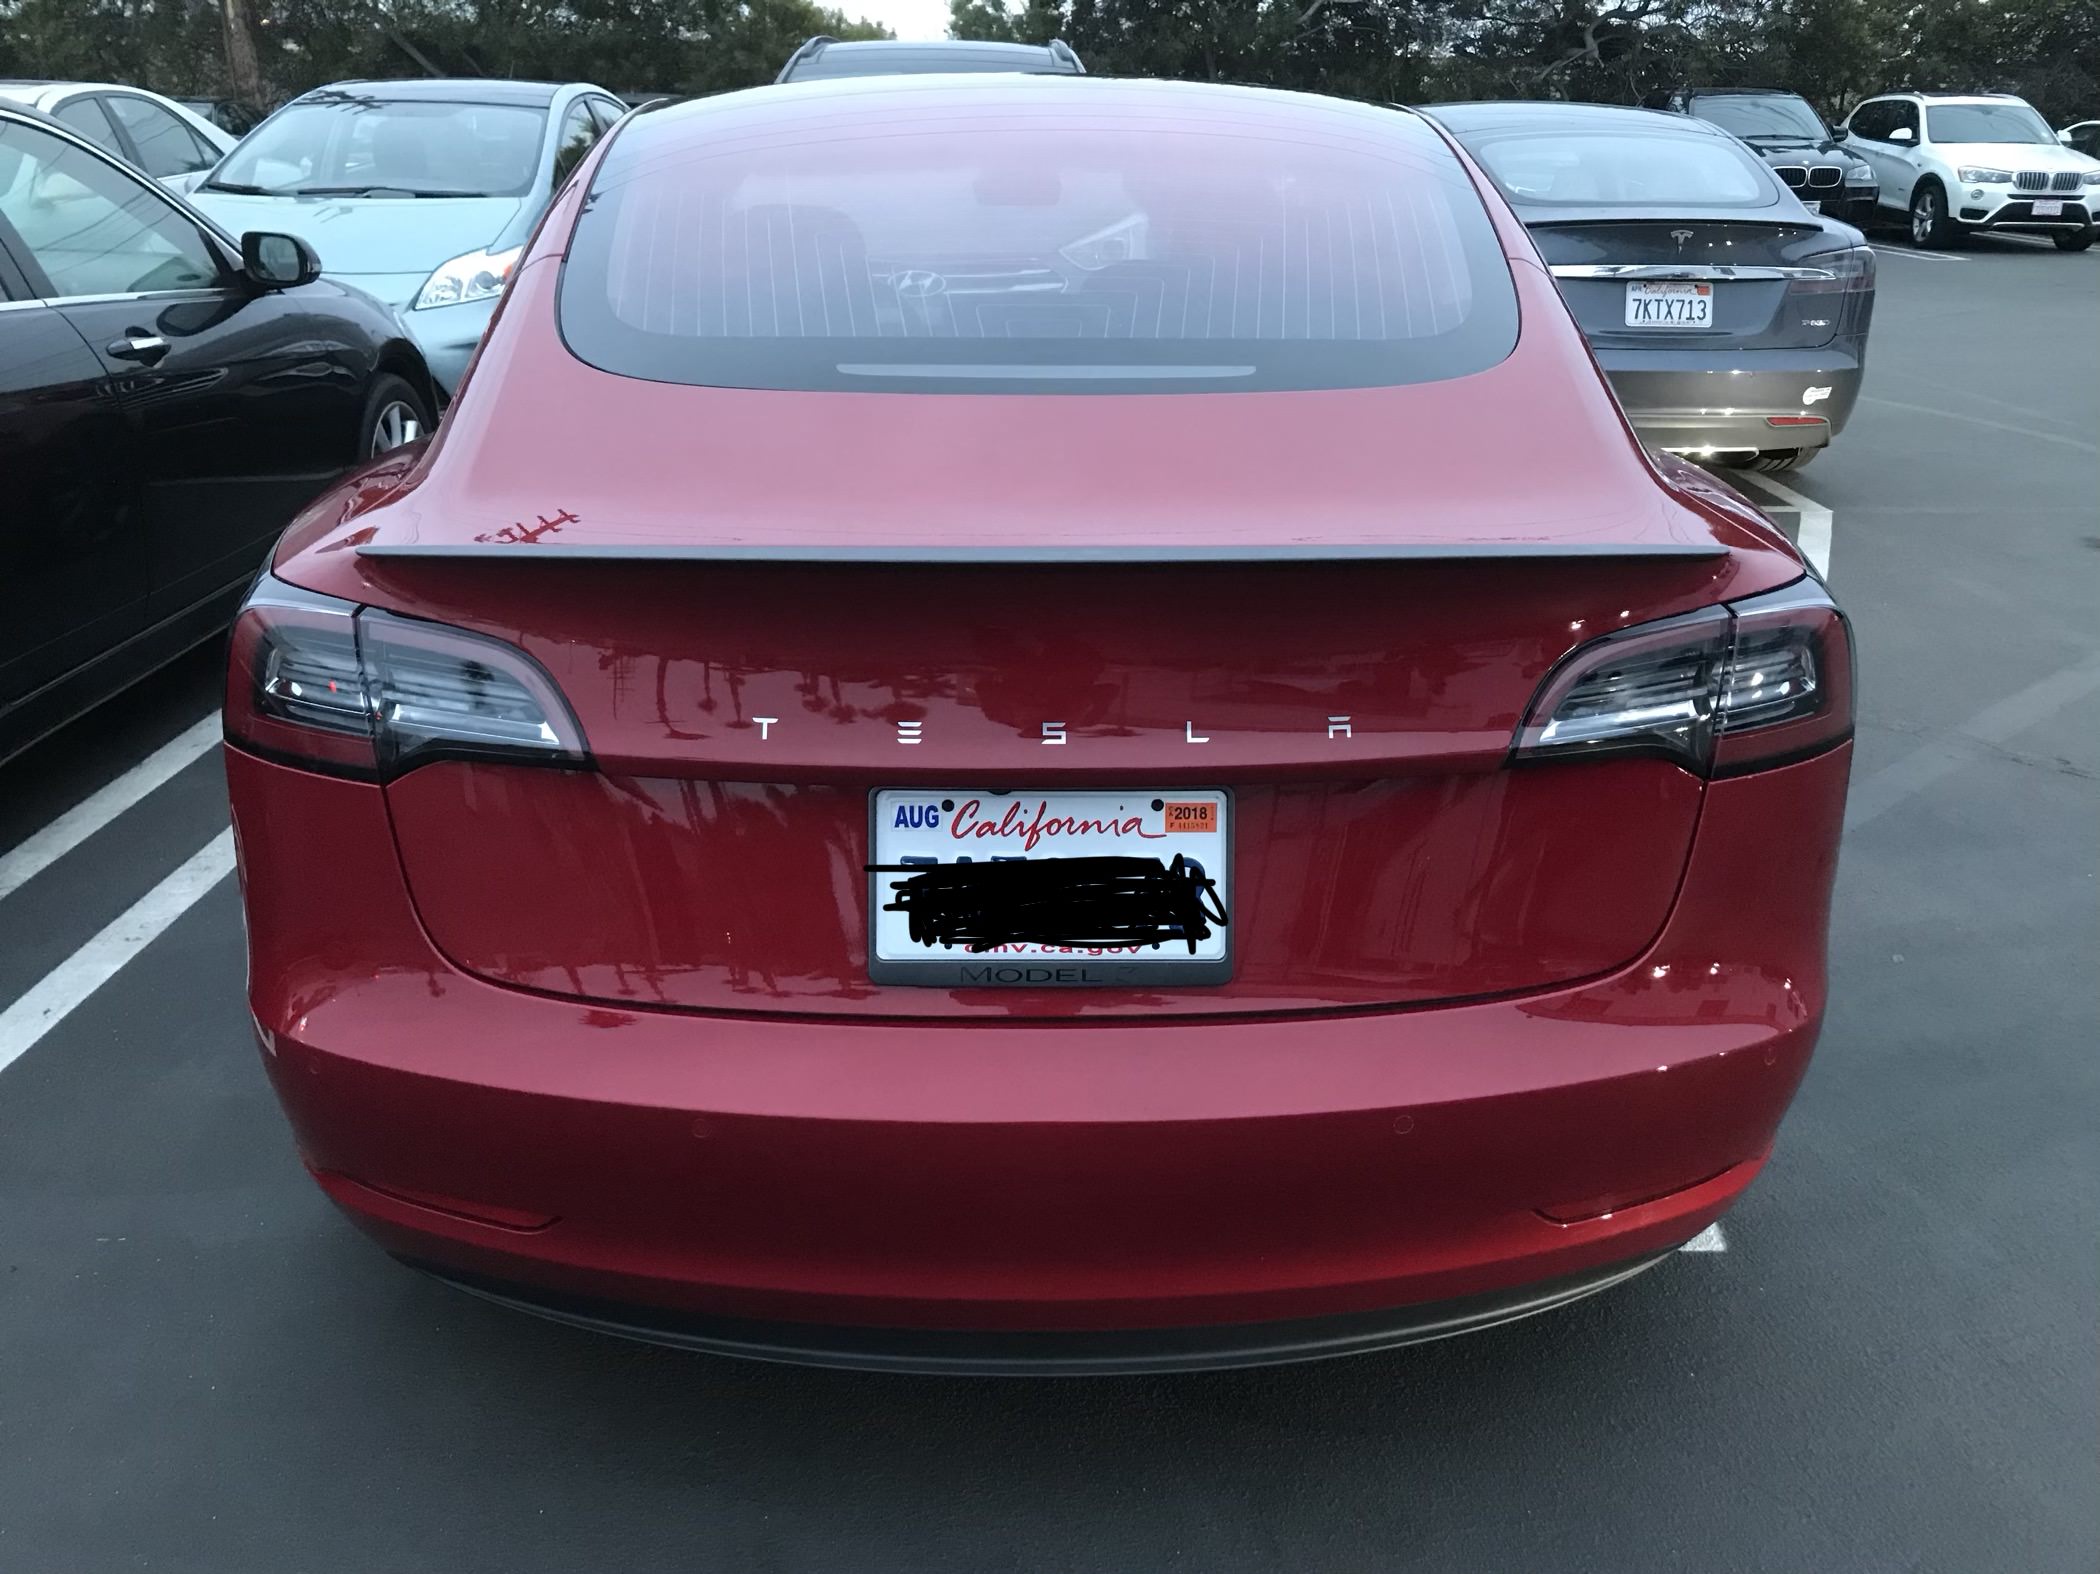 Недавно генеральный директор Tesla Илон Маск показал, что более эффективная версия Model 3 находится в разработке. С ценой от 78 000 долларов она будет больше чем в два раза дороже базовой модели. Она получит дальность хода в 500 км, а разгон до 100 